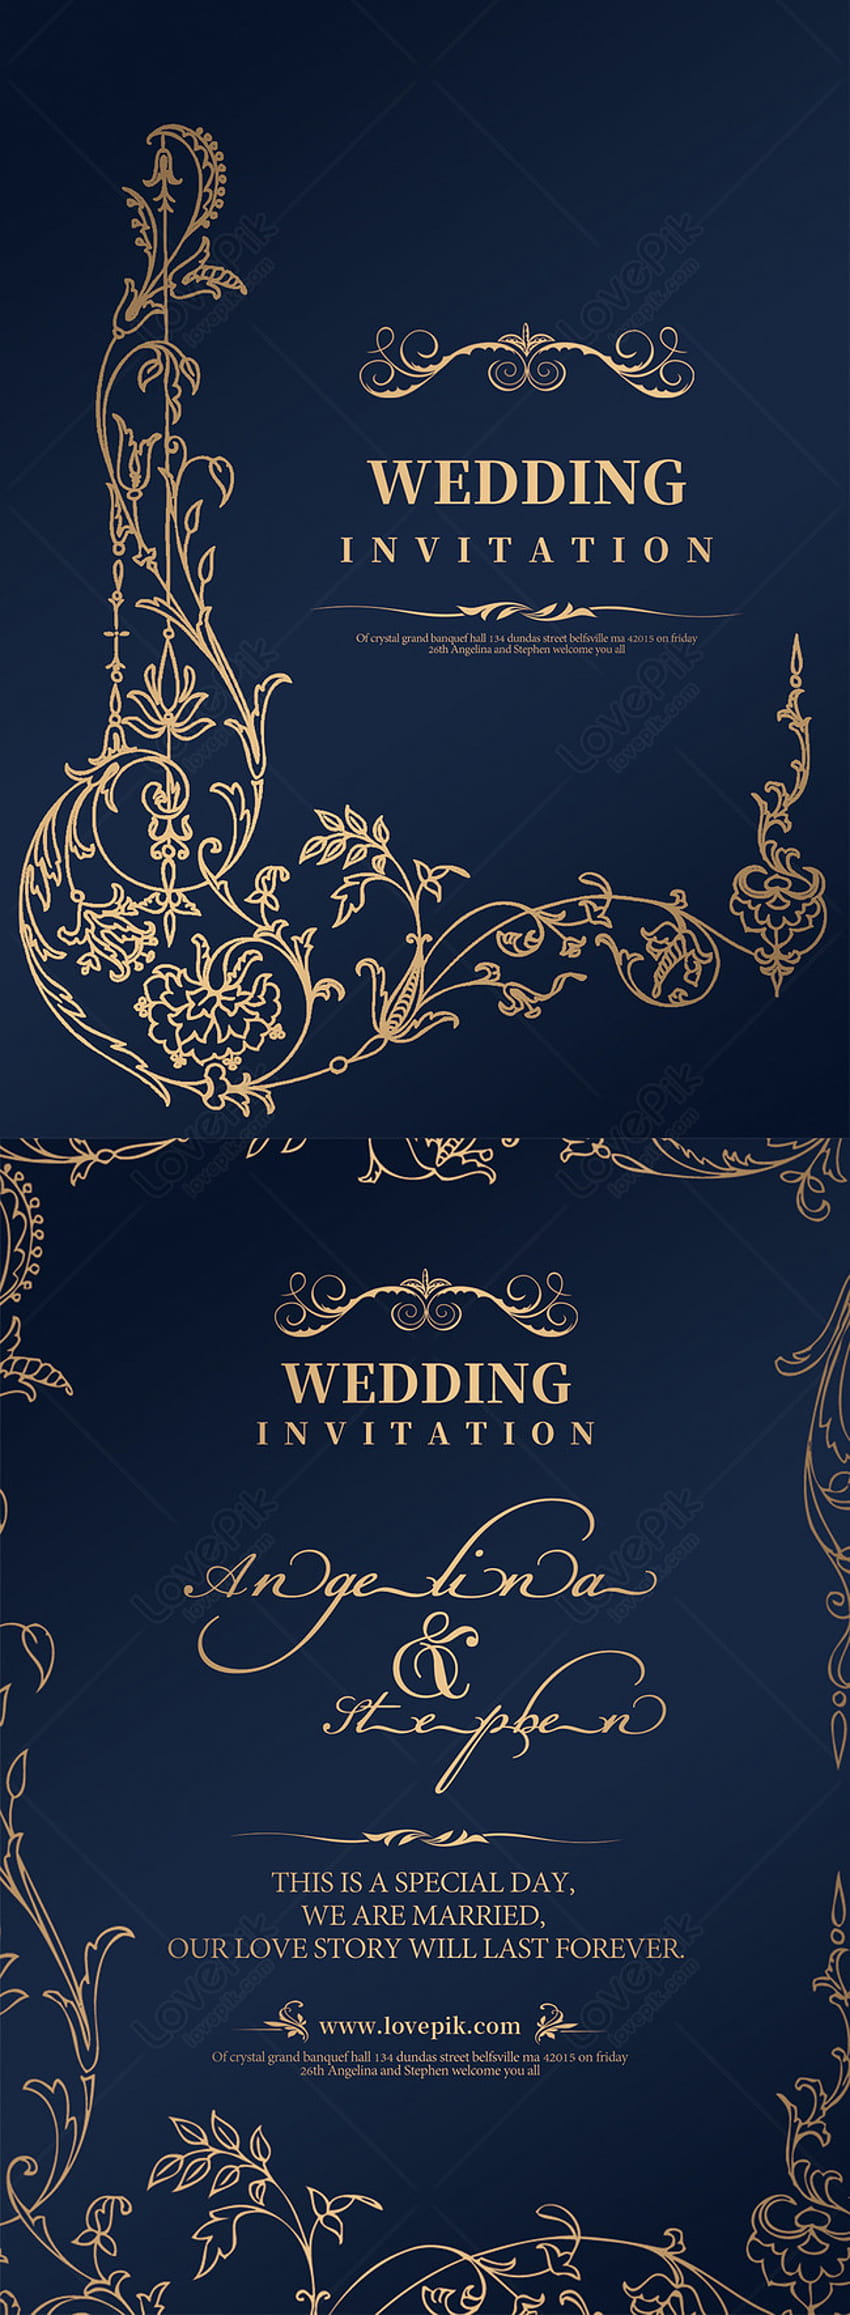 Templat desain undangan pernikahan kata logam latar belakang biru tua _ 450000234_Format PSD, undangan pernikahan wallpaper ponsel HD